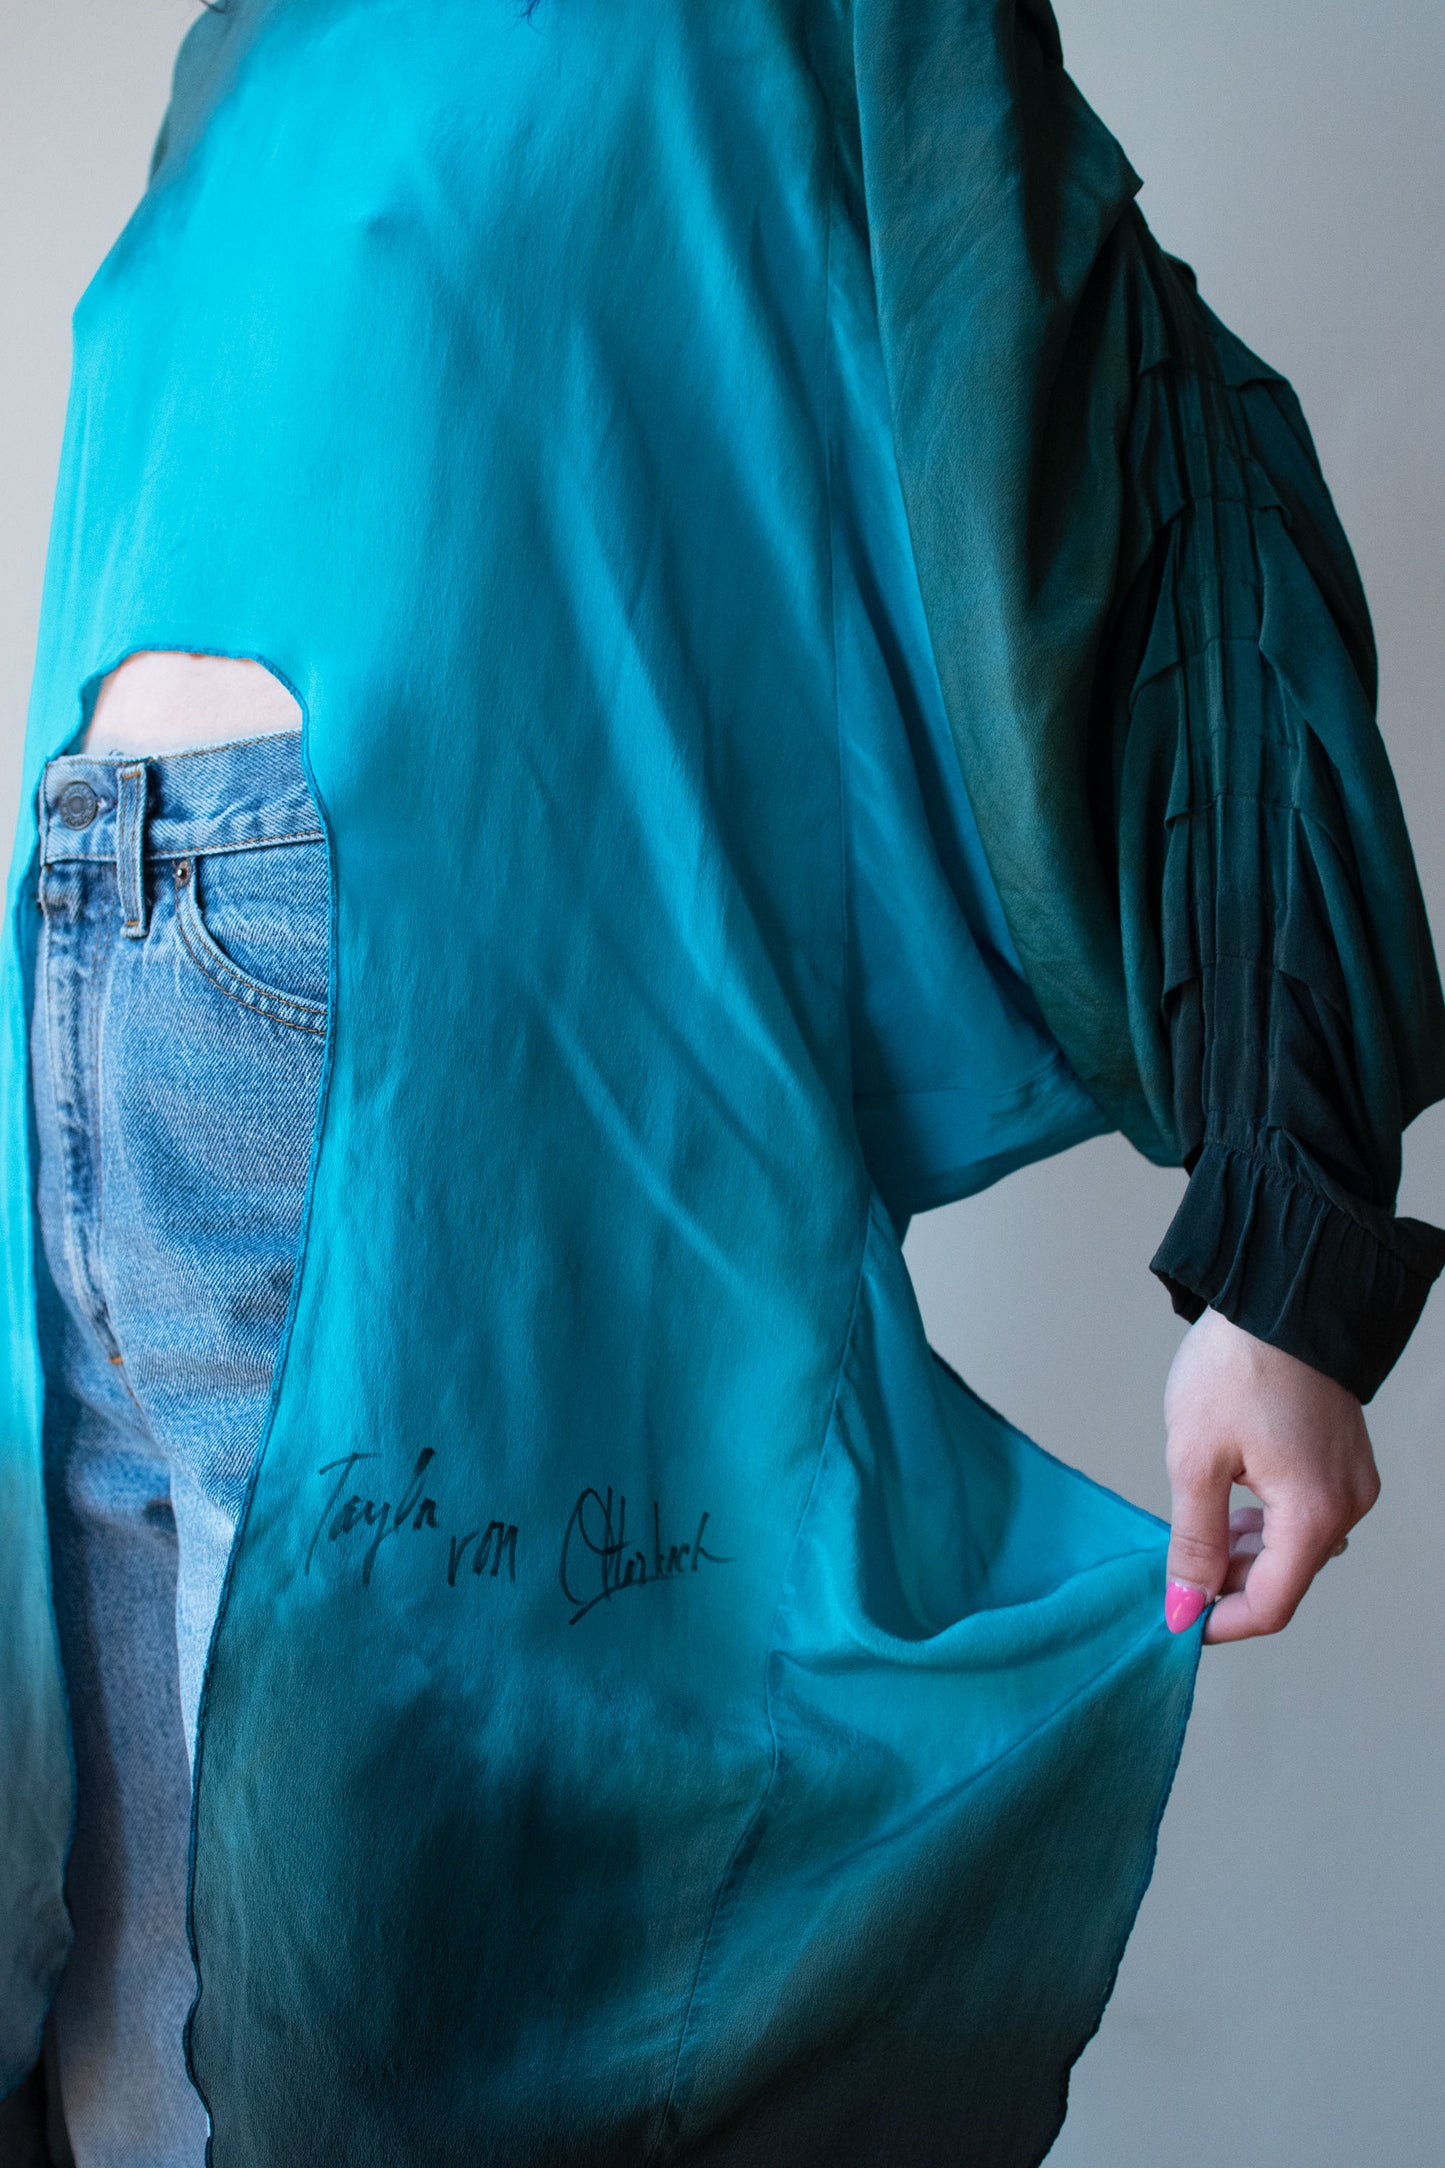 Silk Tunic | Taylor von Otterbach